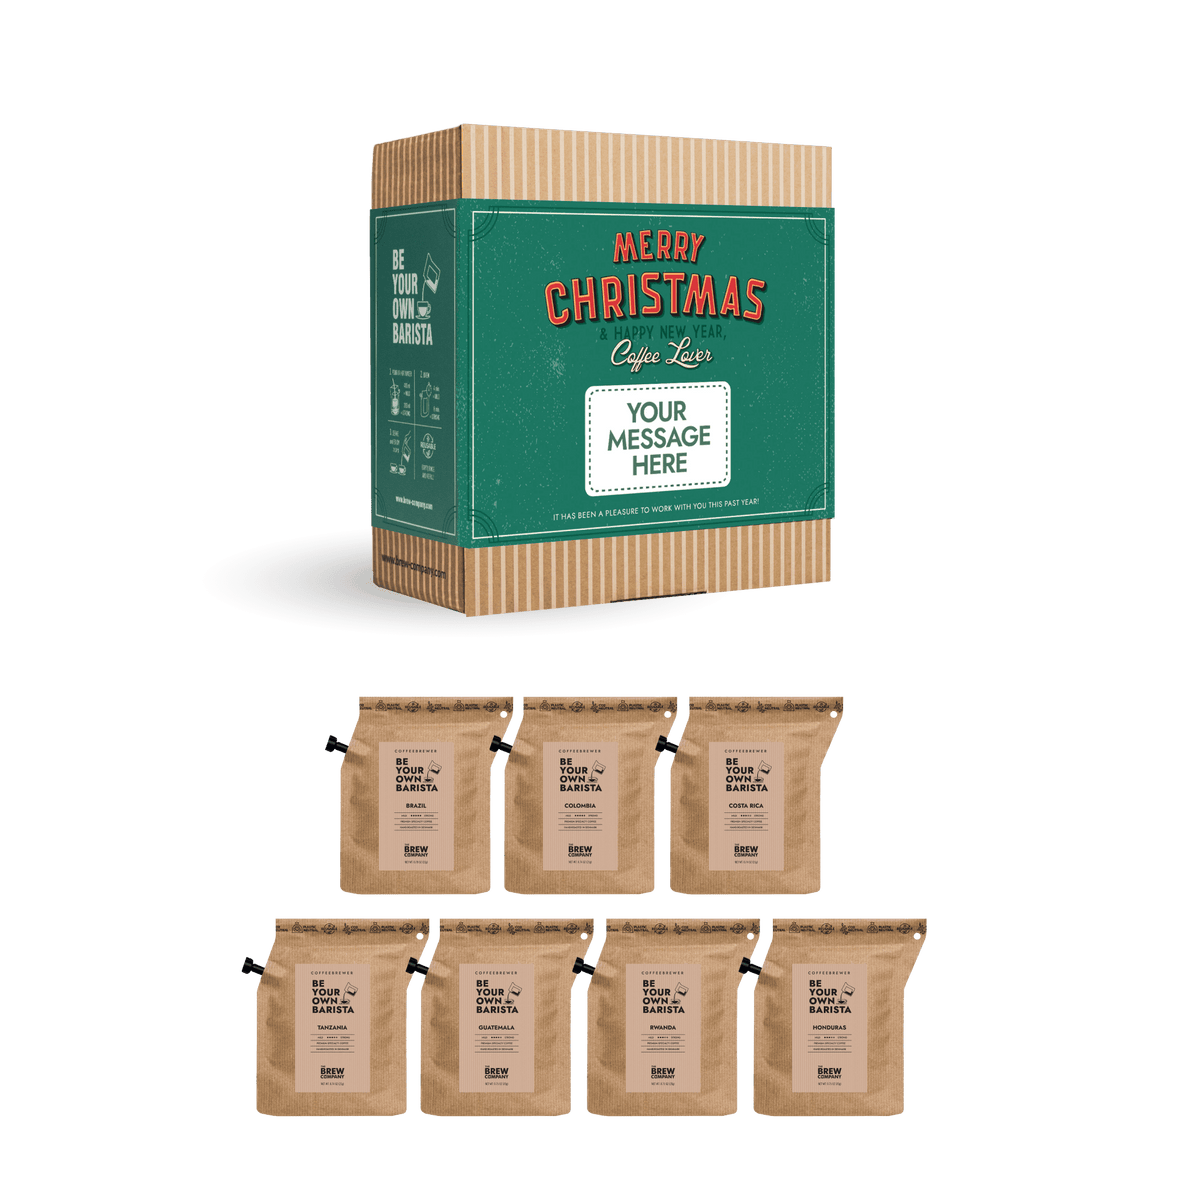 MERRY CHRISTMAS RETRO COFFEE GIFT BOX CUSTOM